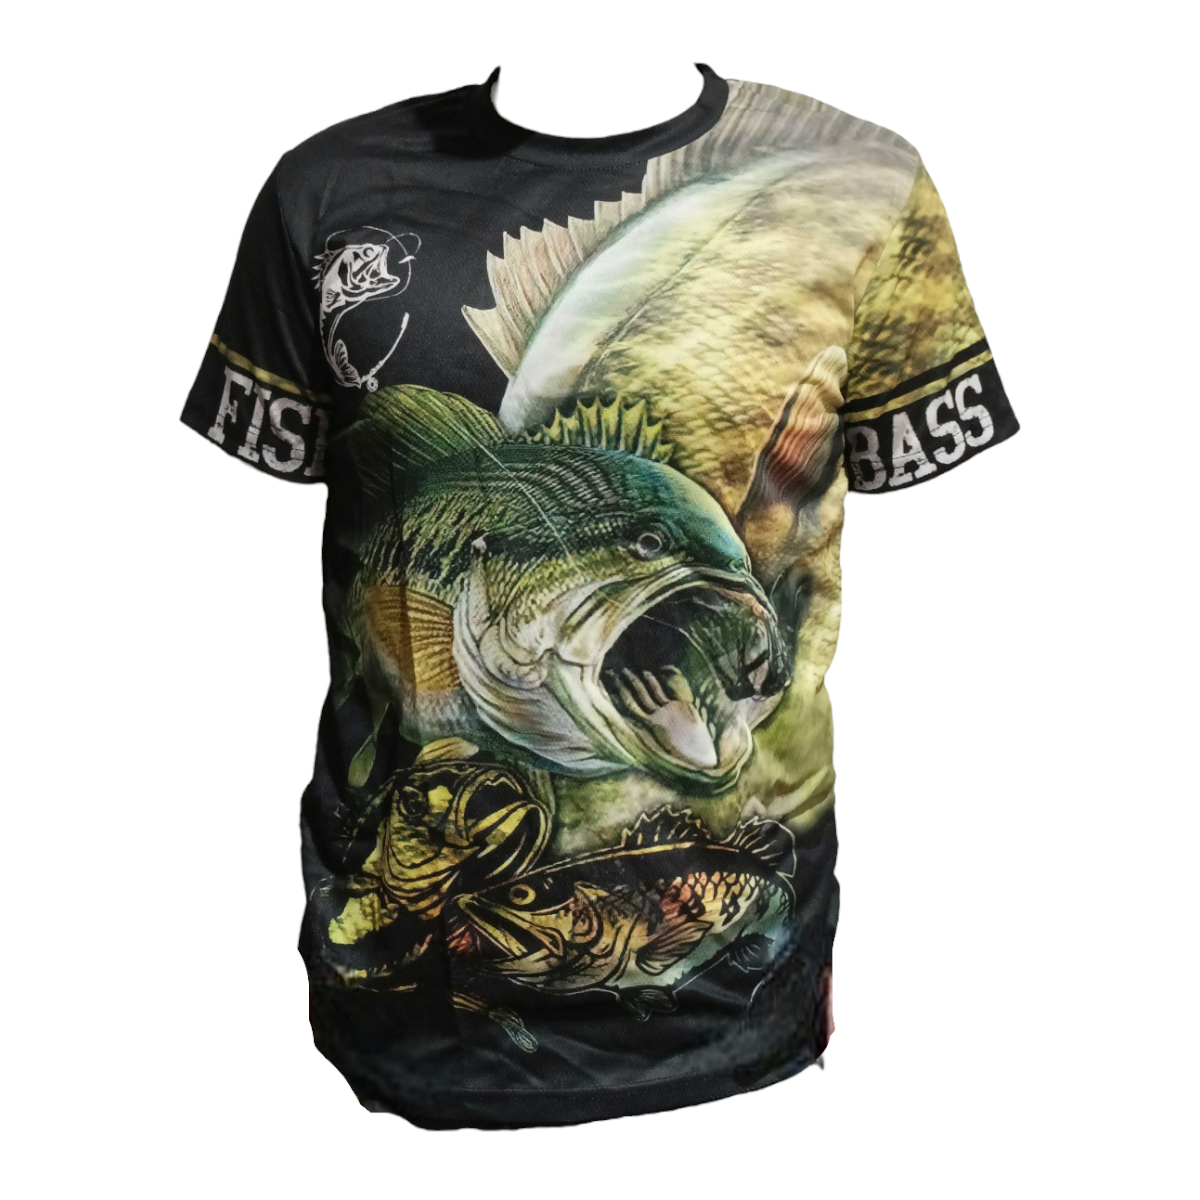 Polera Camiseta Estampado Pesca Outdoor PLS8